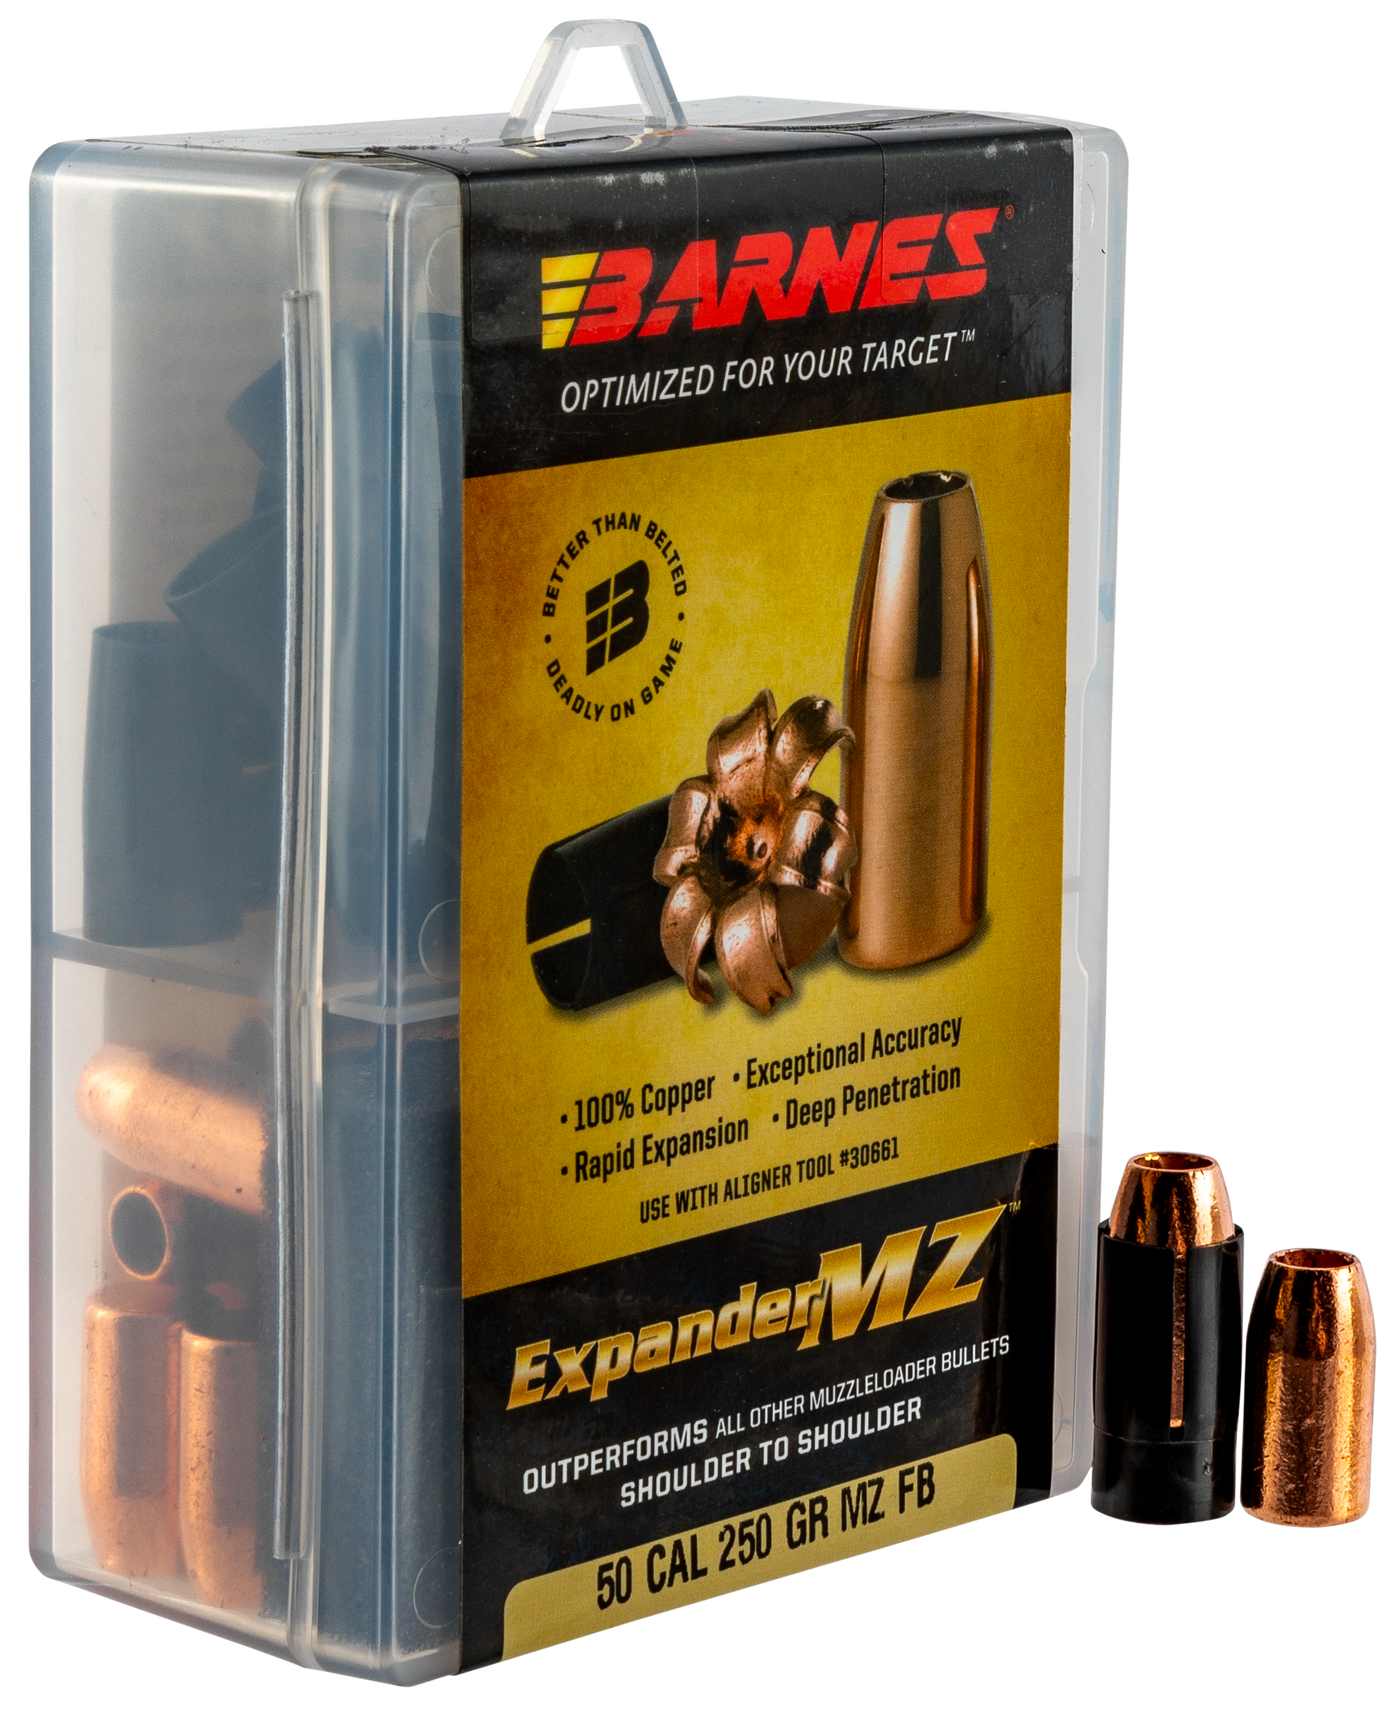 Barnes Bullets Expander Mz, Brns 30577 Expmz 50c 250 Exp        24